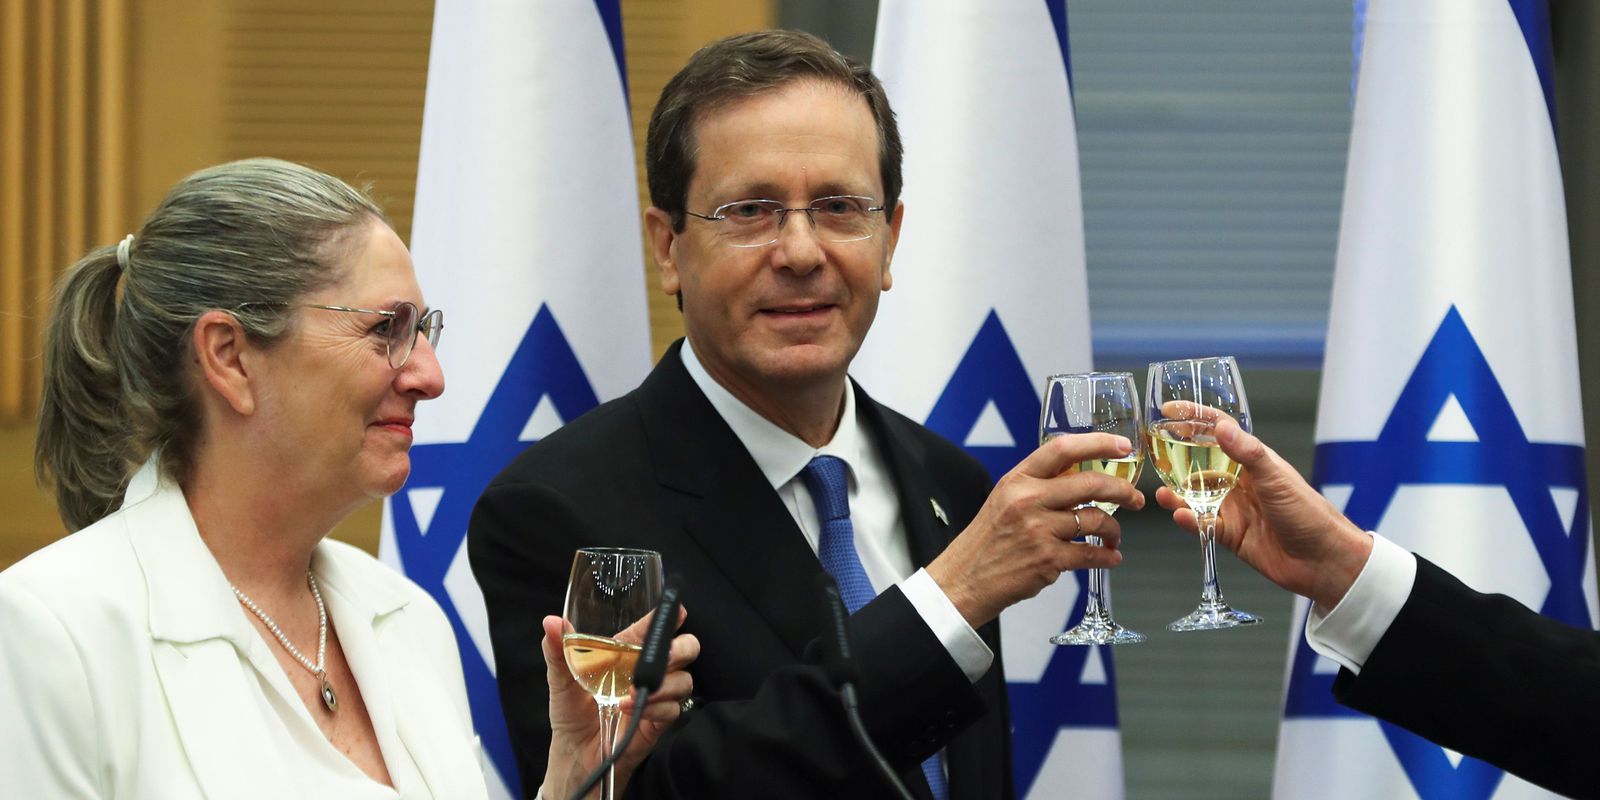 Former center-left politician Duke elected president of Israel